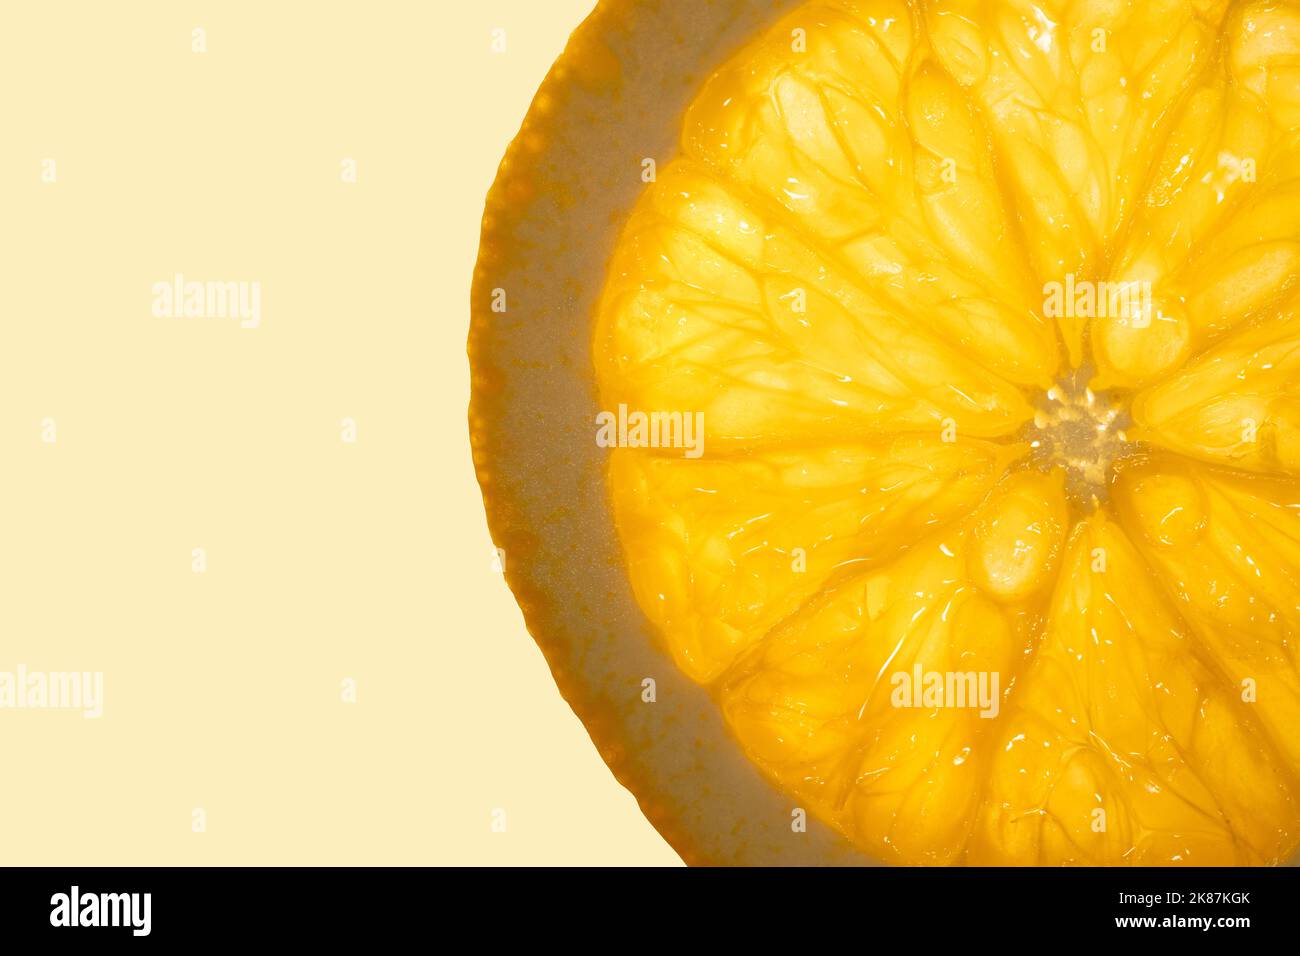 Slice of fresh juicy orange fruit close up on light orange copy space background. Macro photography concept.  Stock Photo